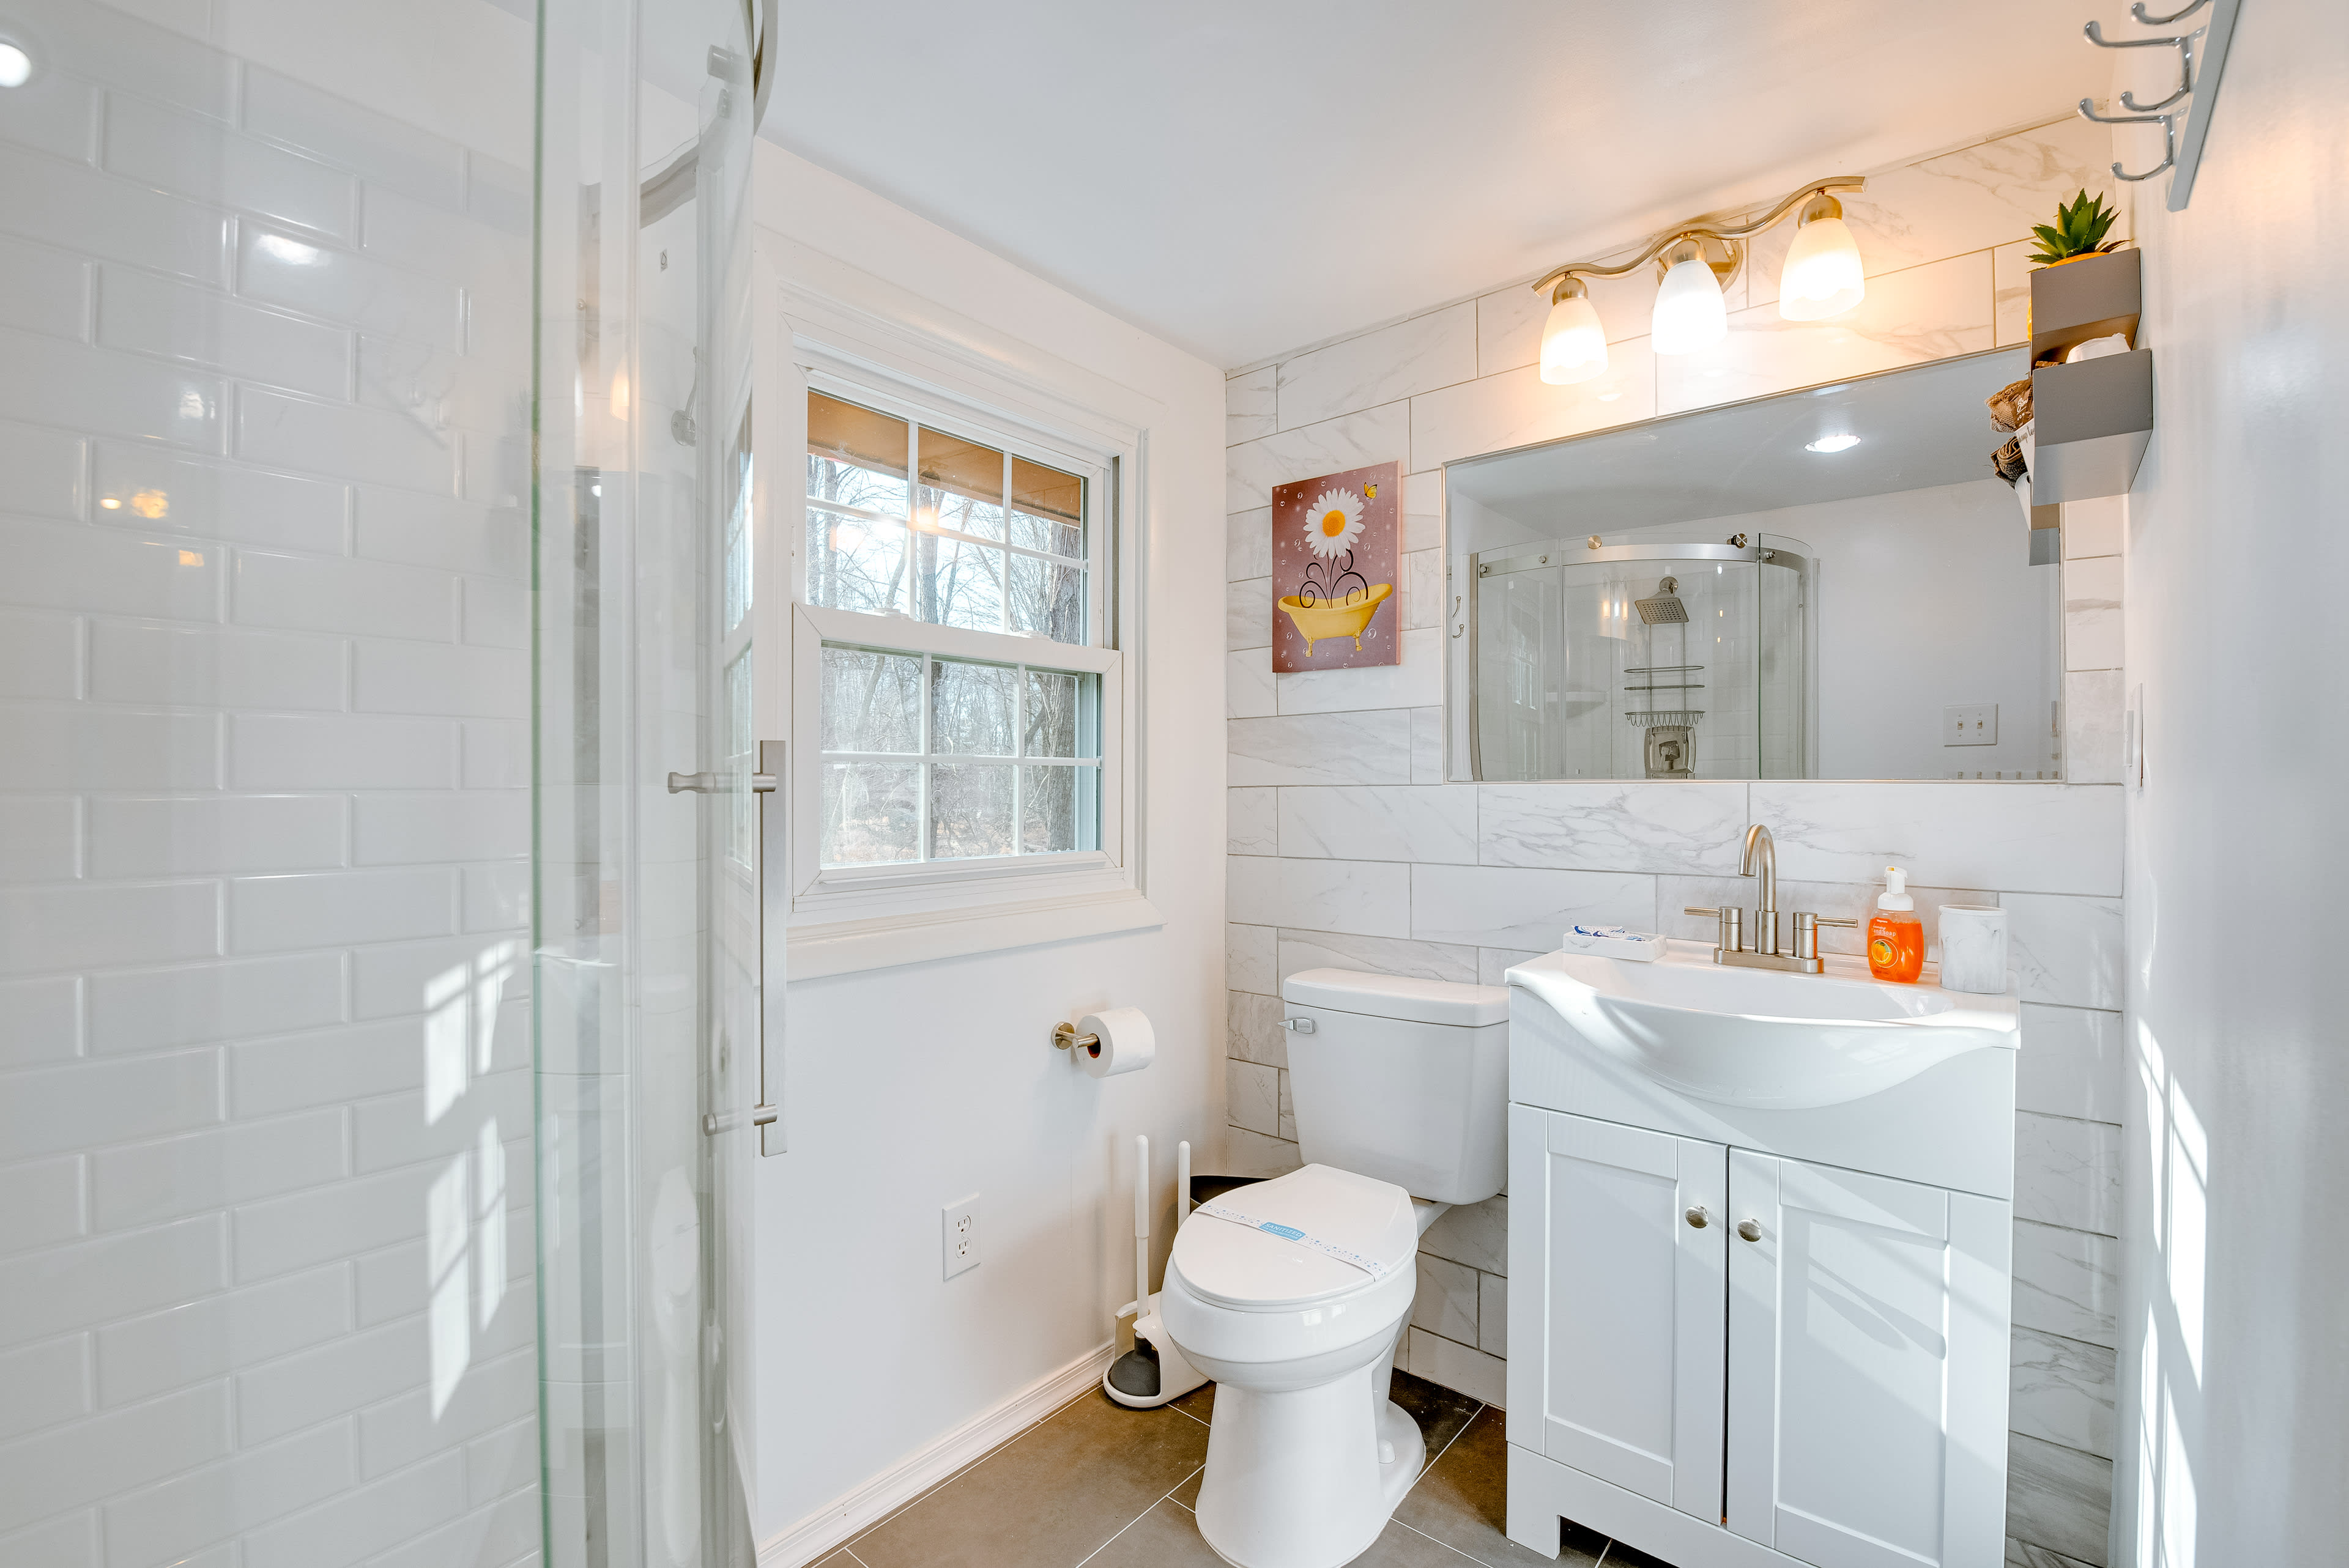 En-Suite Bathroom | Complimentary Toiletries | Hair Dryer | Towels